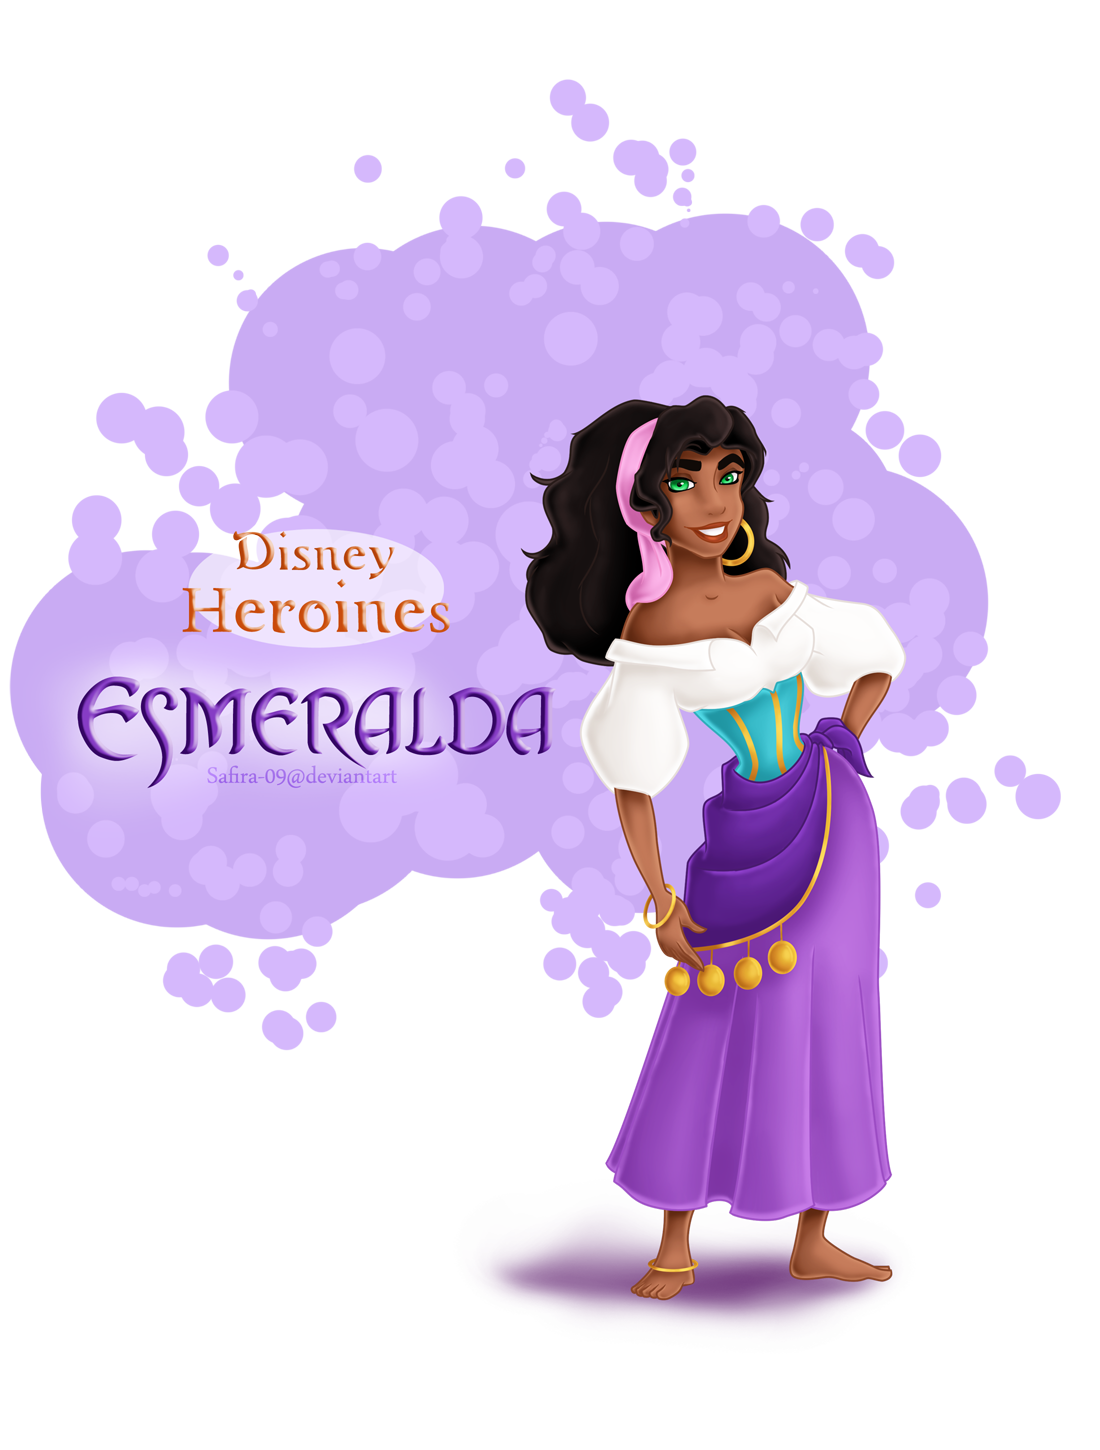 Disney Heroines - Esmeralda - những người nghiện phim hoạt hình thời thơ ấu  bức ảnh (37241763) - fanpop